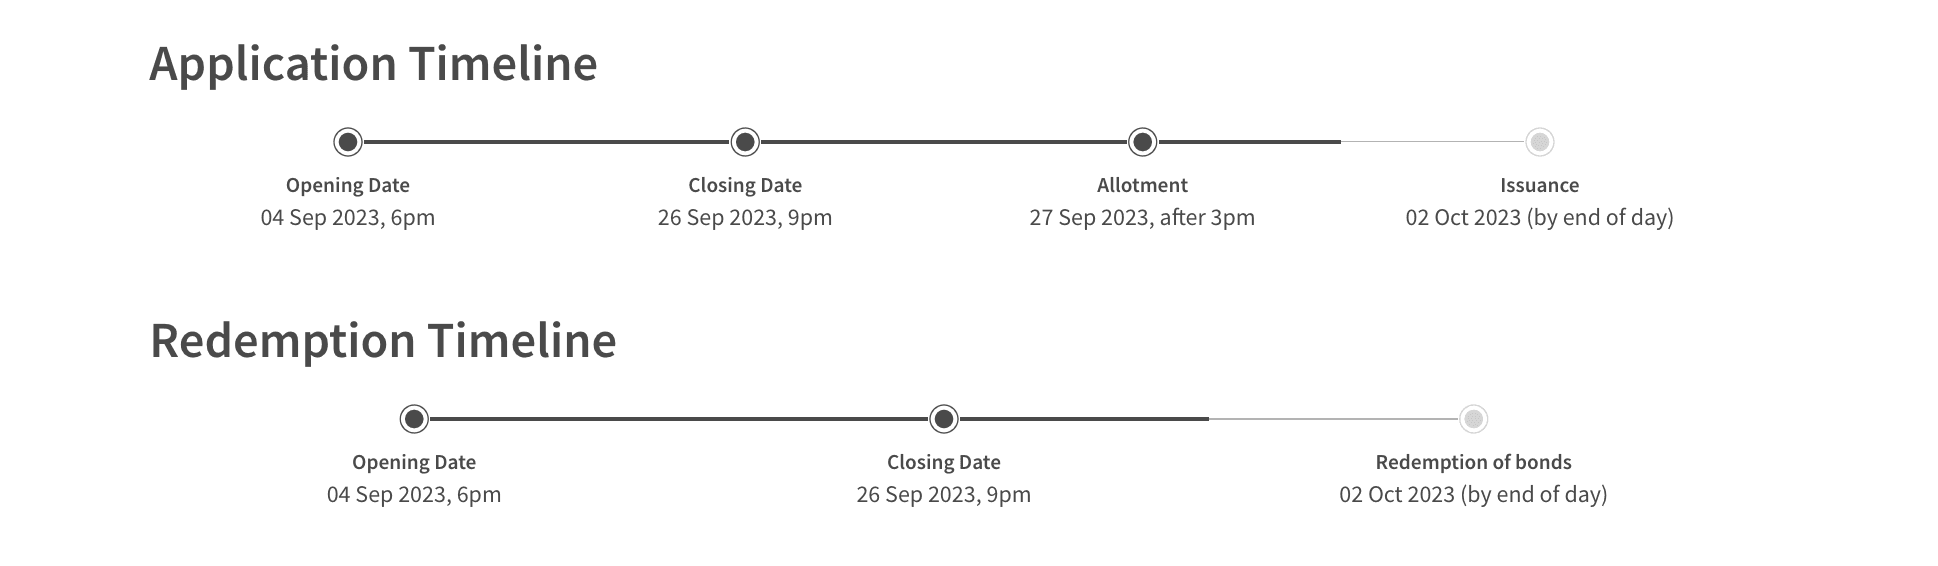 ssb allotment timeline october 2023